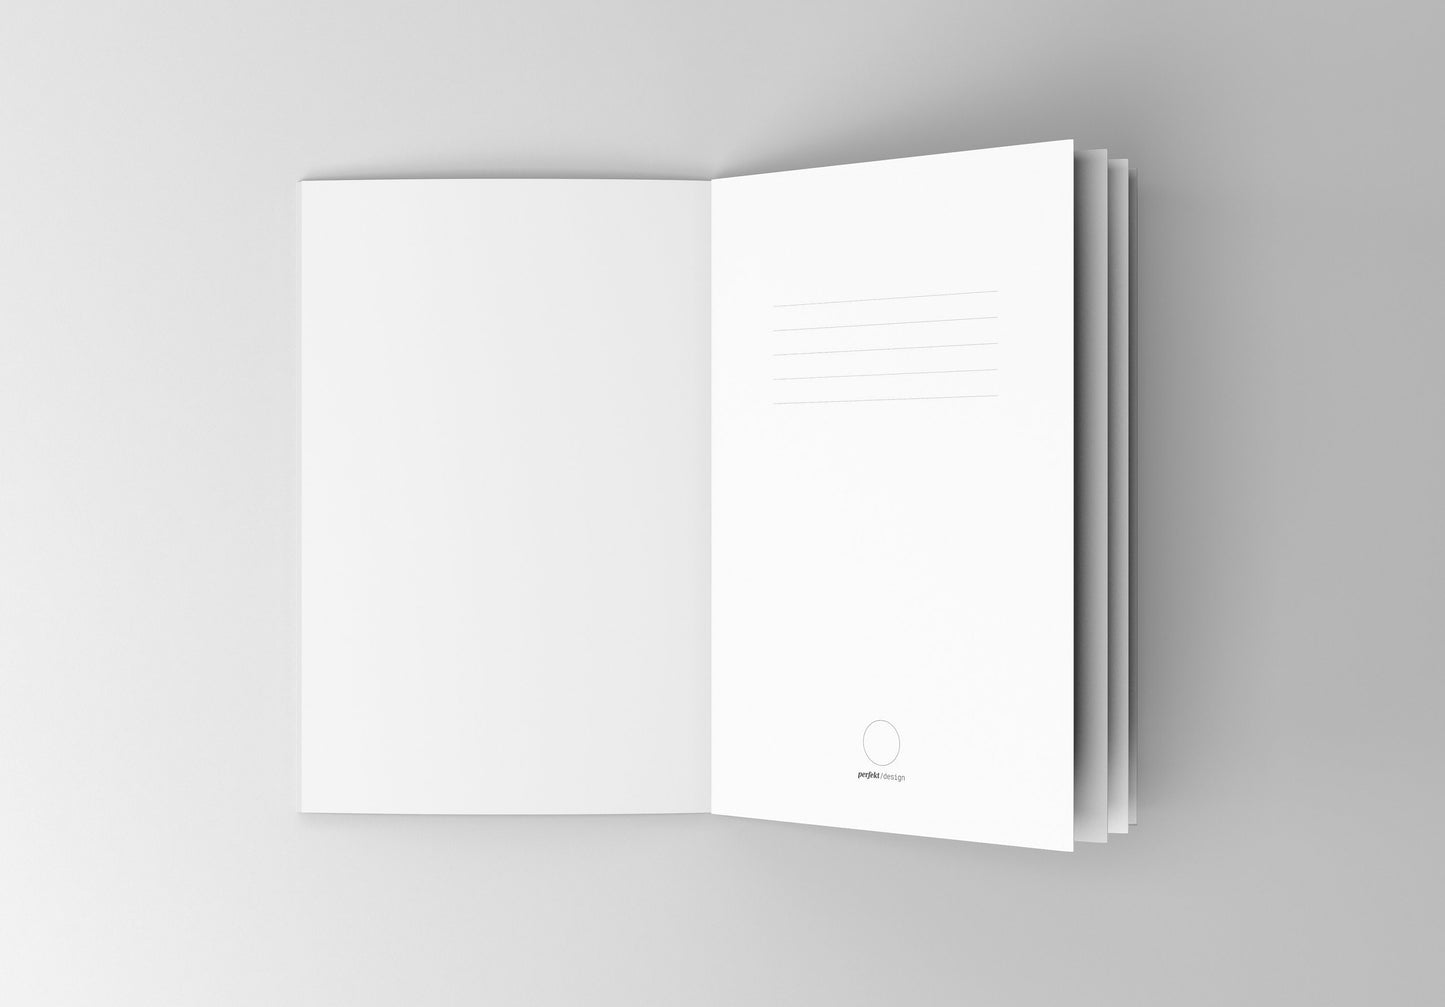 Notizbuch Papageien | Kakadus | 13x20 cm